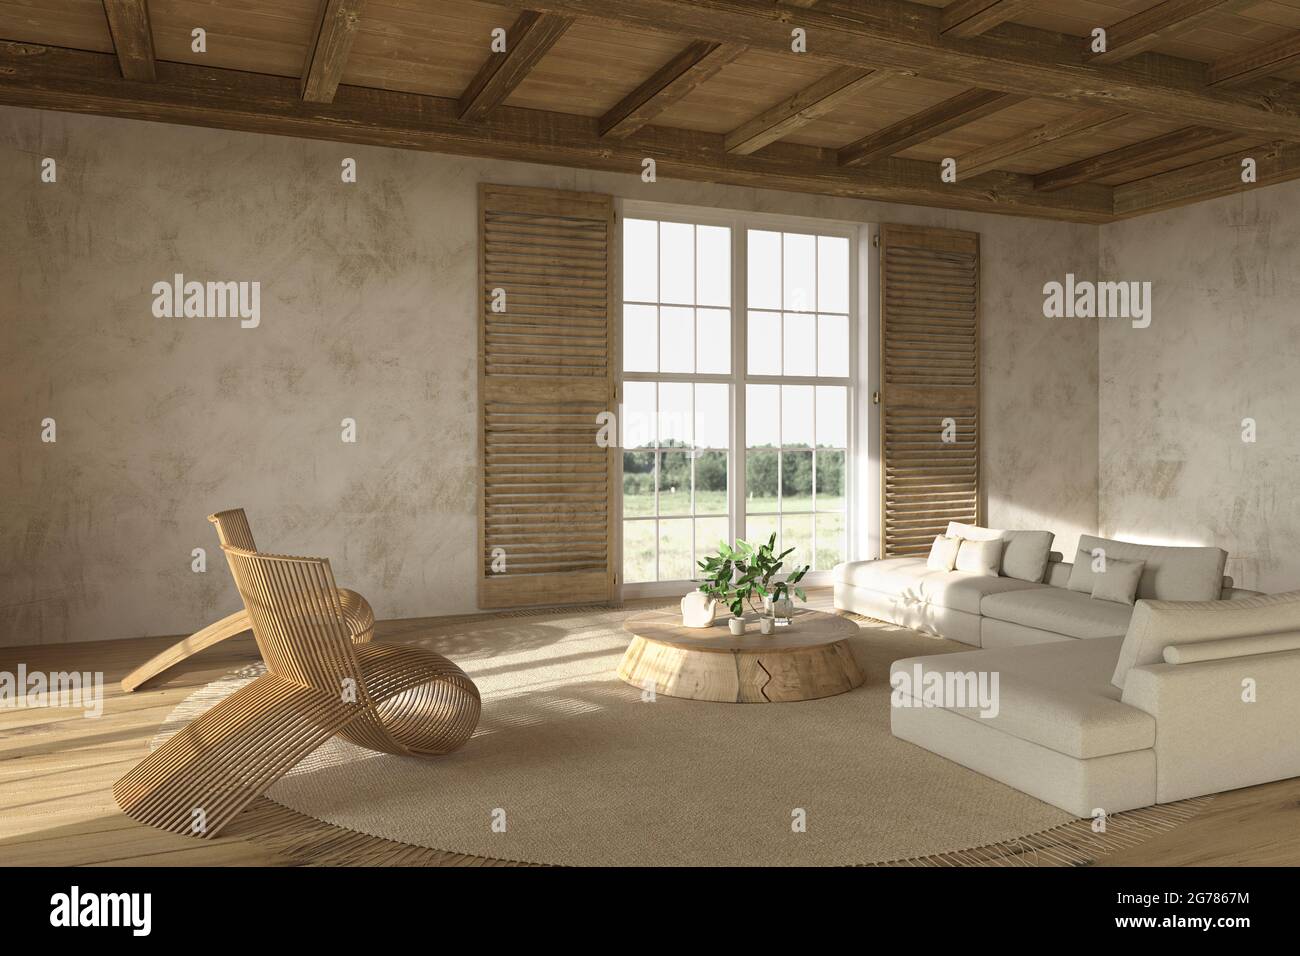 Stile casale scandinavo. Interno soggiorno beige con mobili in legno naturale 3D rappresentazione illustrazione. Foto Stock